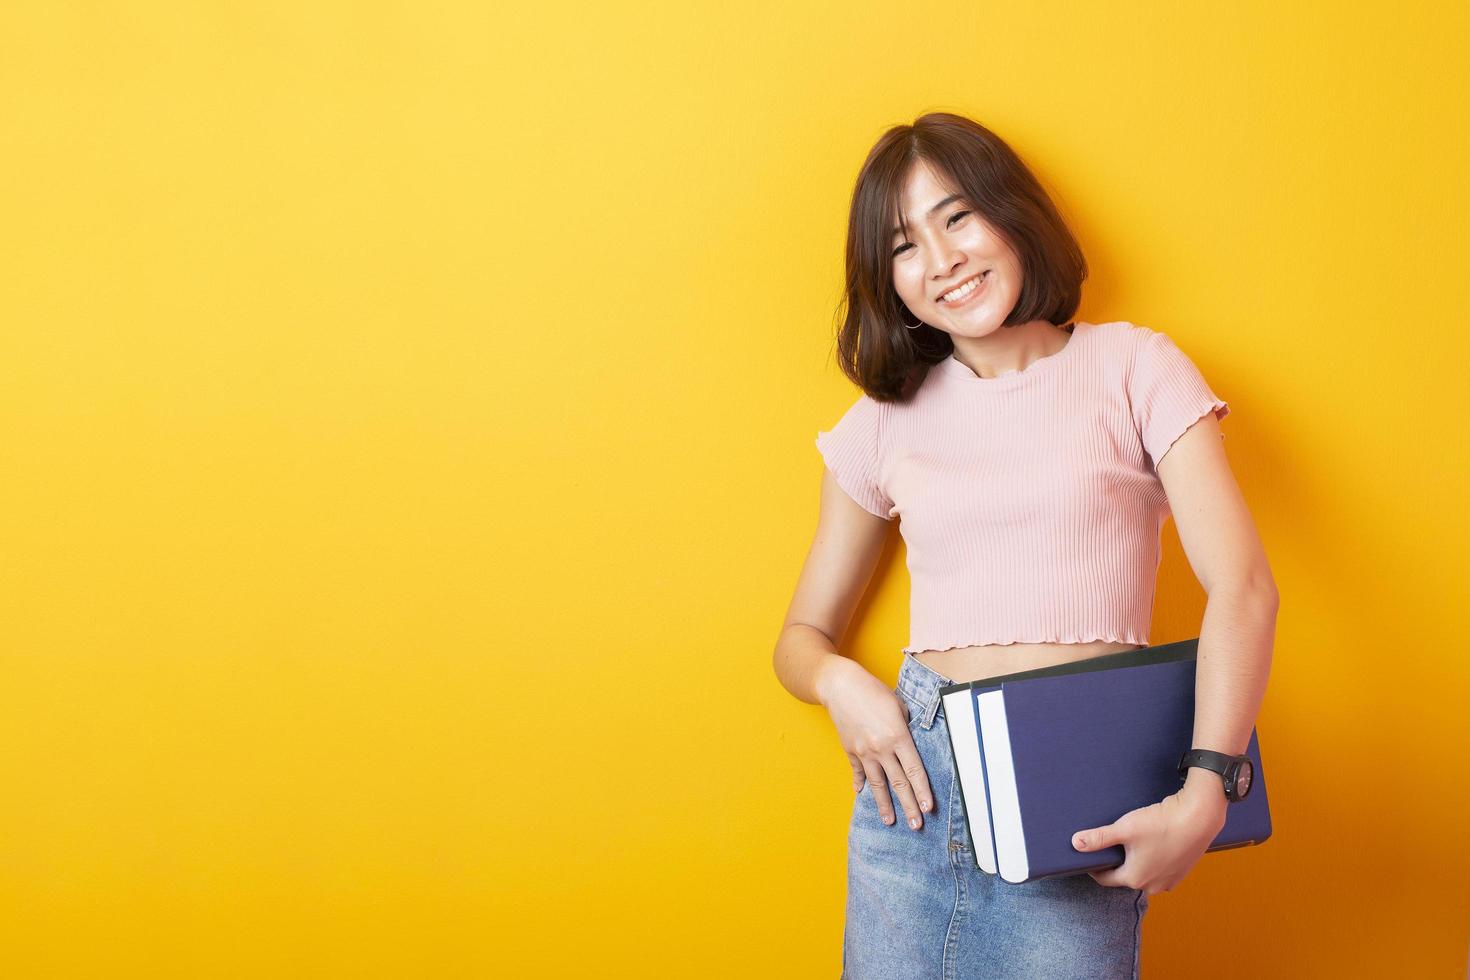 bella estudiante universitaria asiática feliz con antecedentes amarillos foto